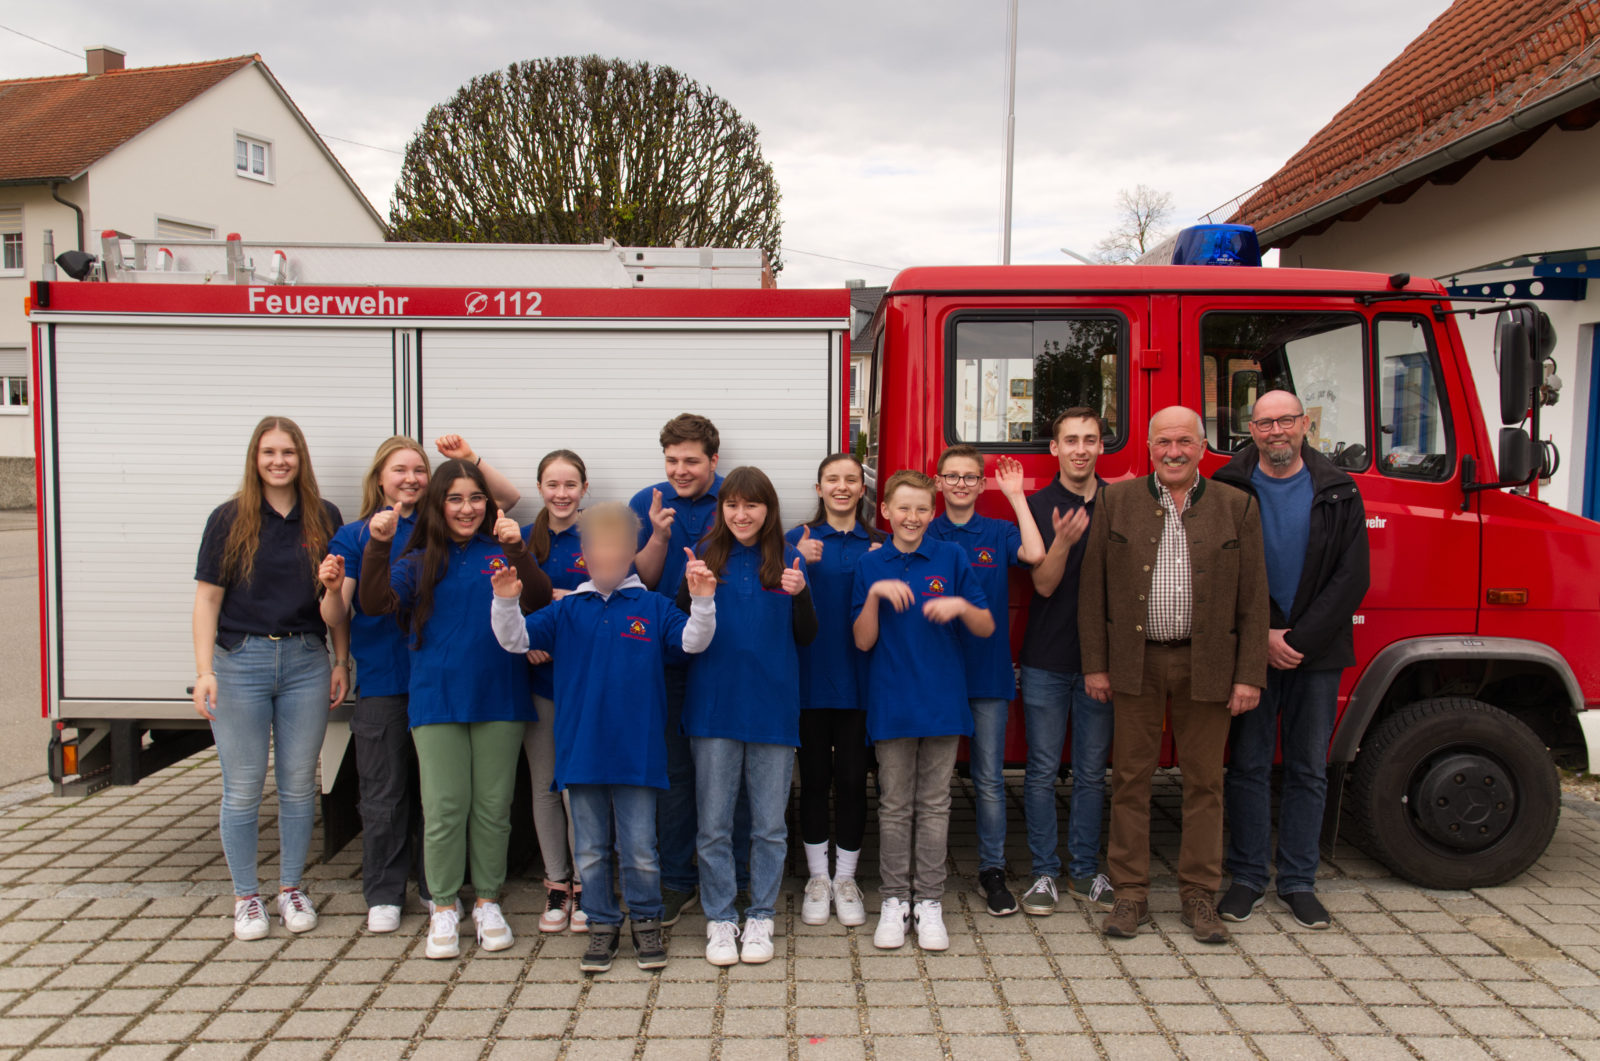 Gruppenfoto der neuen Feuerwehrjugend Westenhausen zusammen mit Vorstand Anton Kloiber und Rainer Steib, der die Polo-Shirts gesponsert hat.